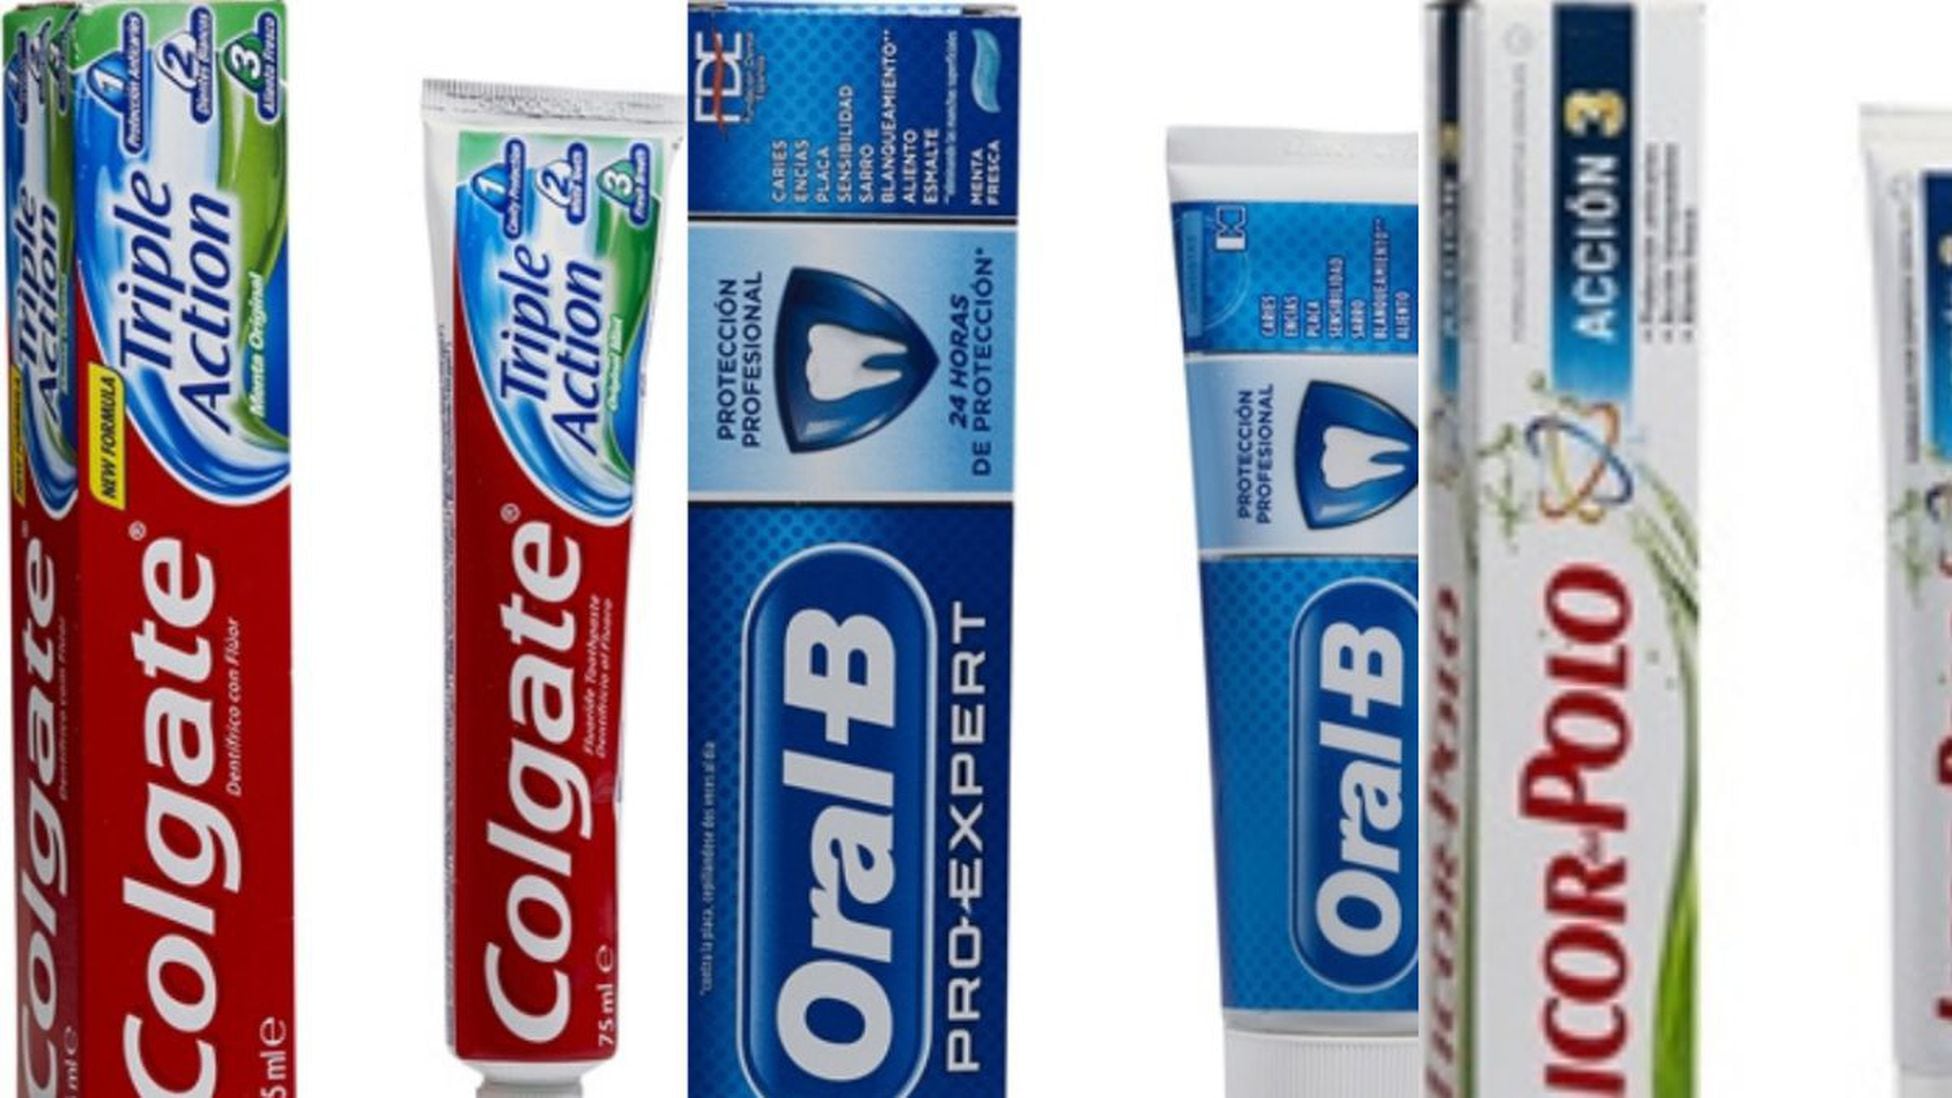 Temporada Apropiado para castigar Las pastas de dientes mejor y peor valoradas por la OCU - Tikitakas